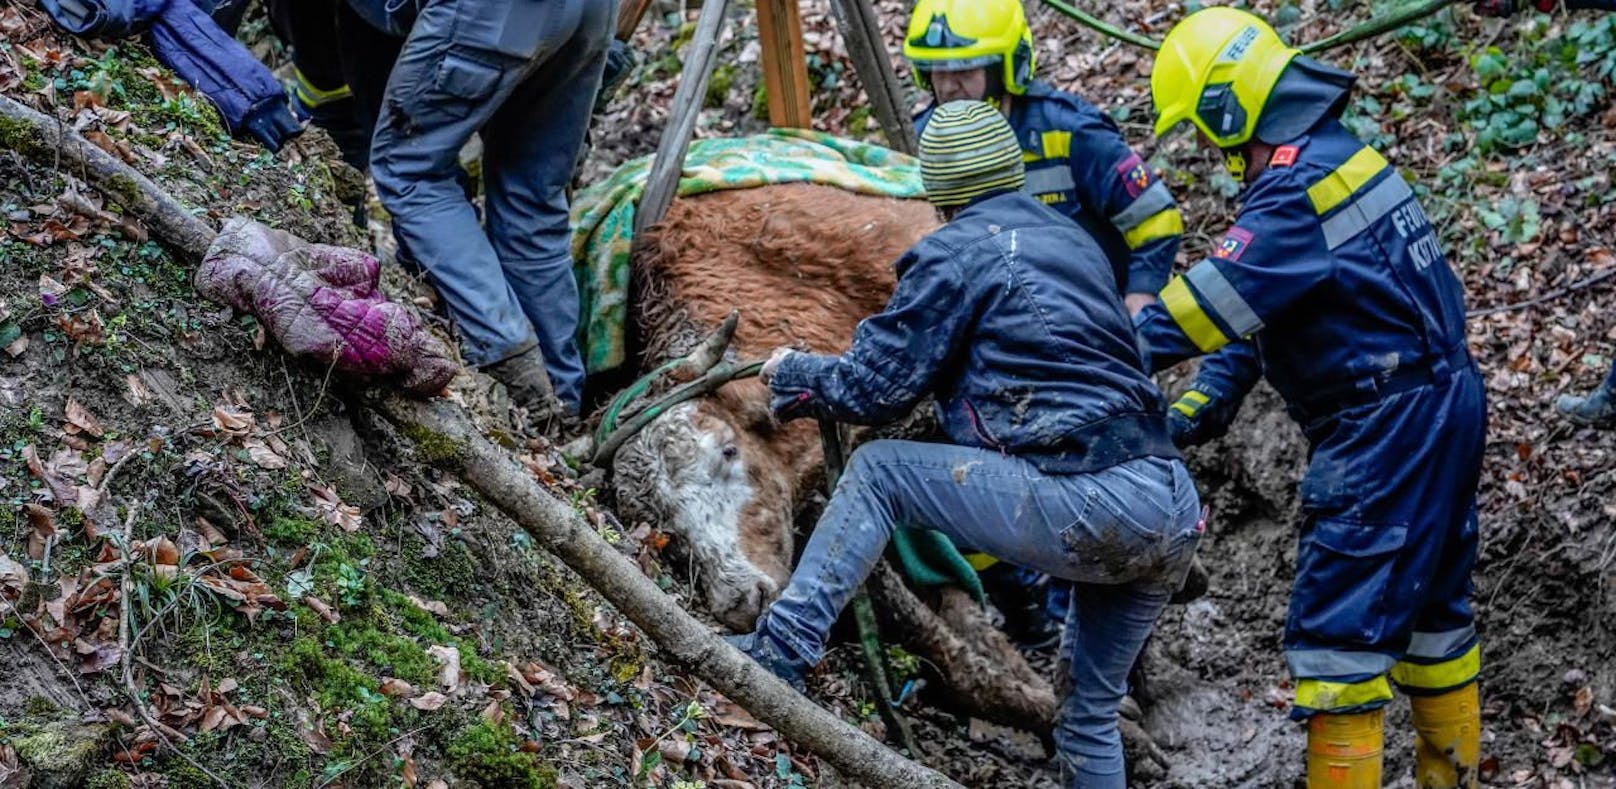 Kuh stürzte in Graben – schwierige Rettungsaktion